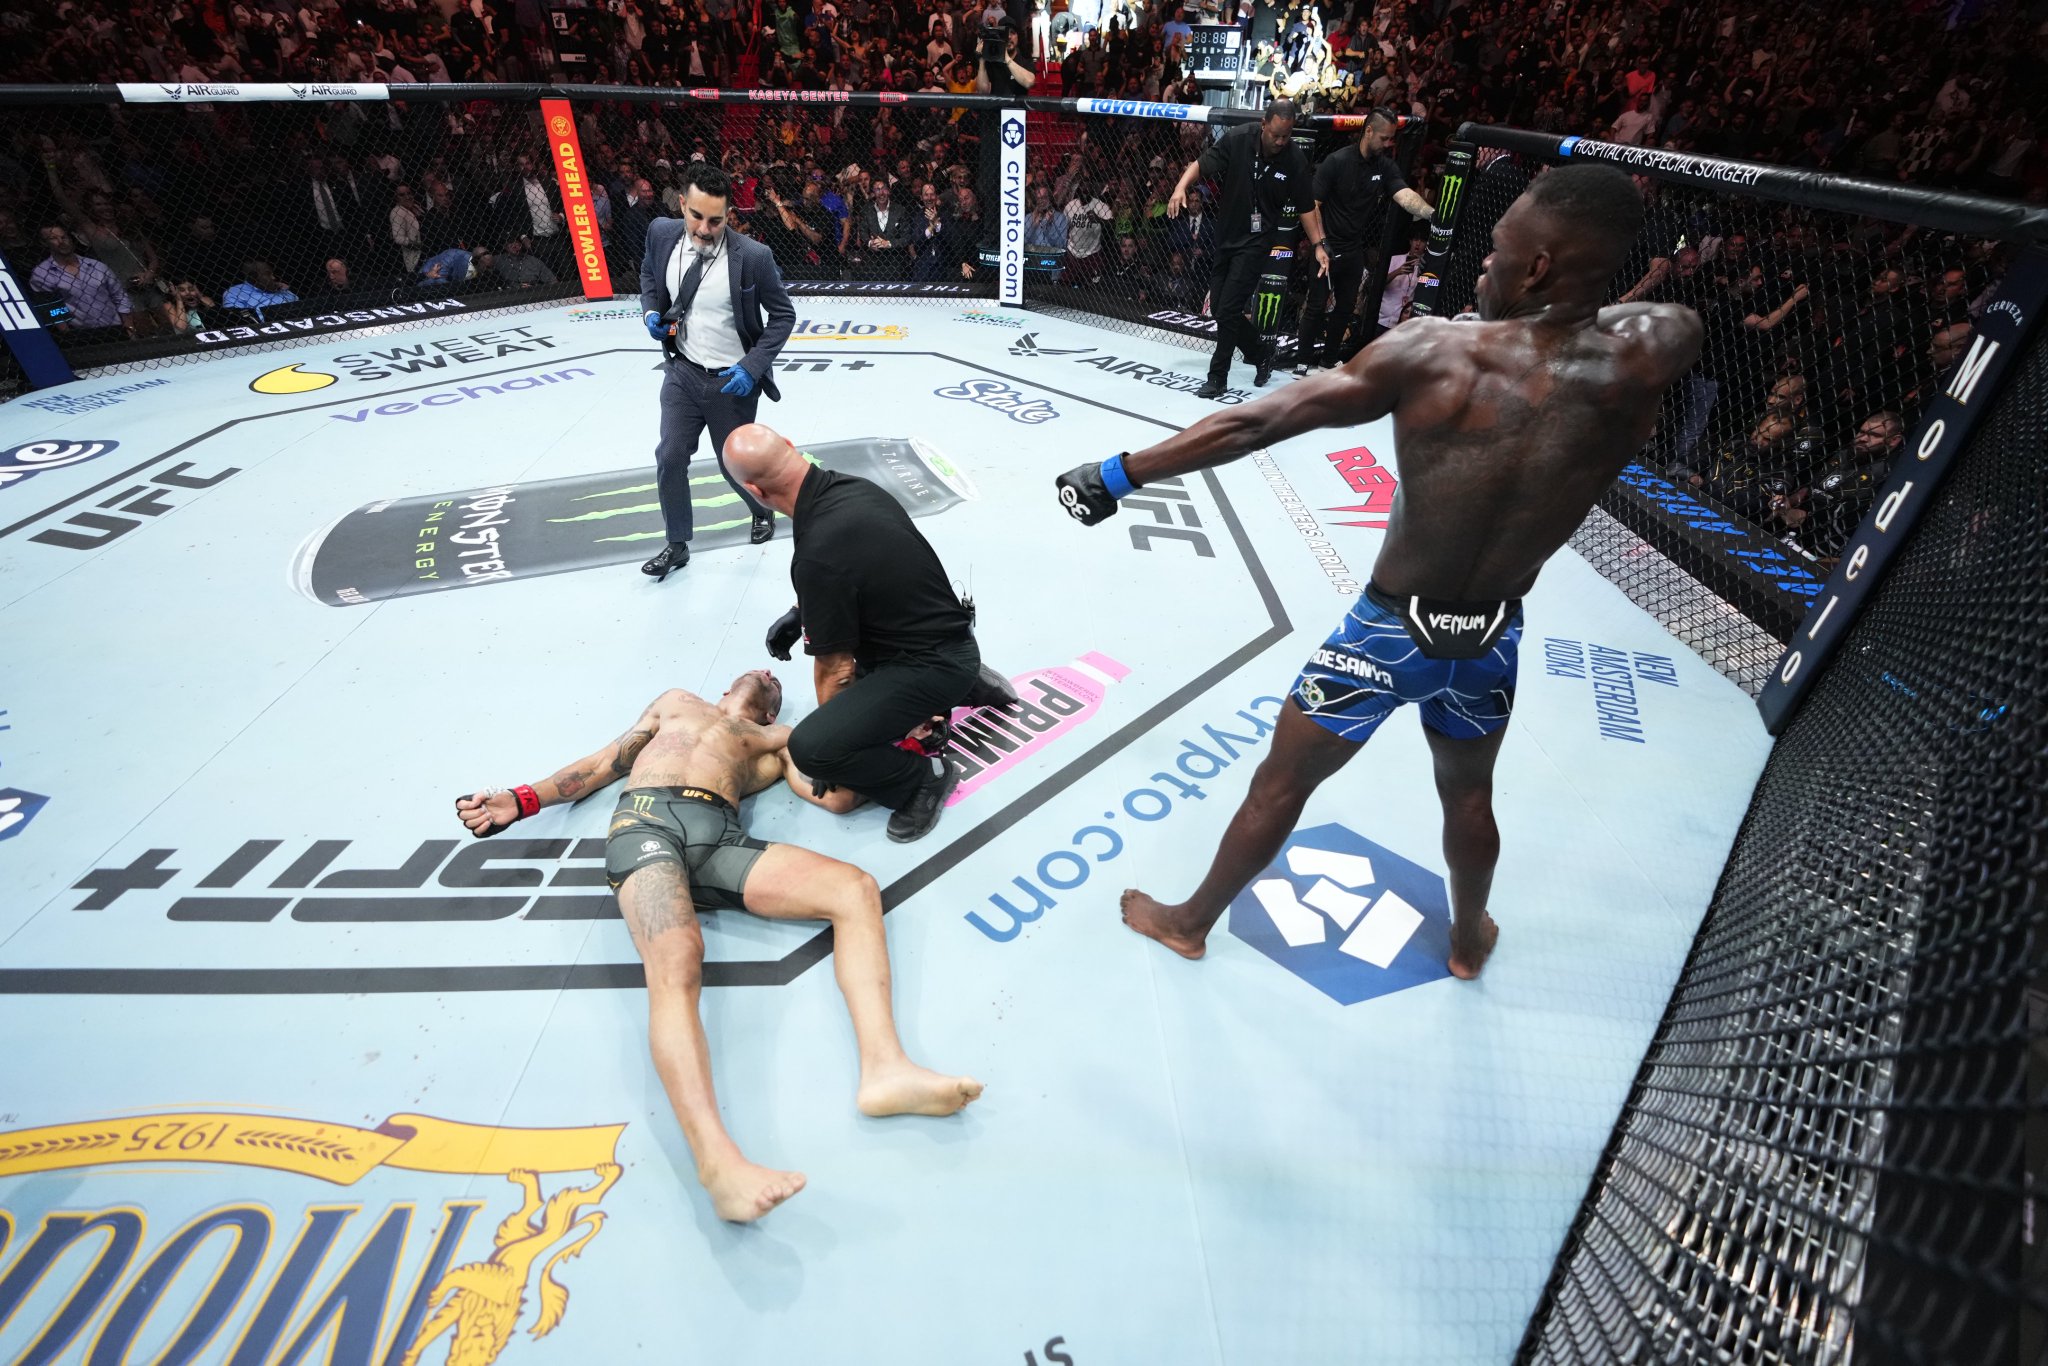 UFC 287 - Alex Pereira vs Israel Adesanya